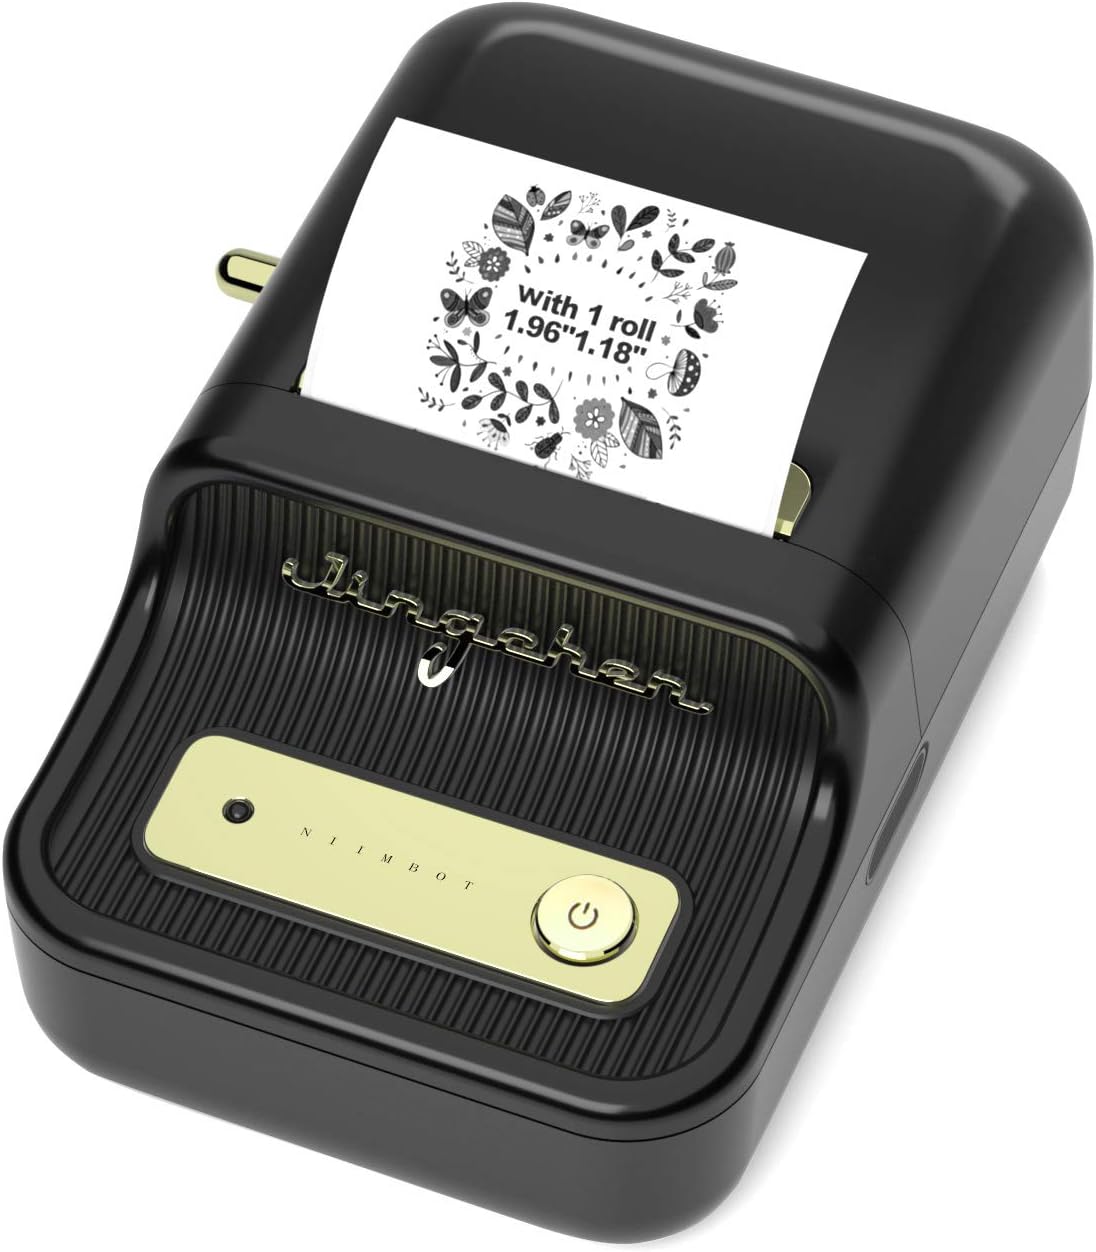 Impresora térmica NIIMBOT B21 de Etiquetas compatible con iOS y Android